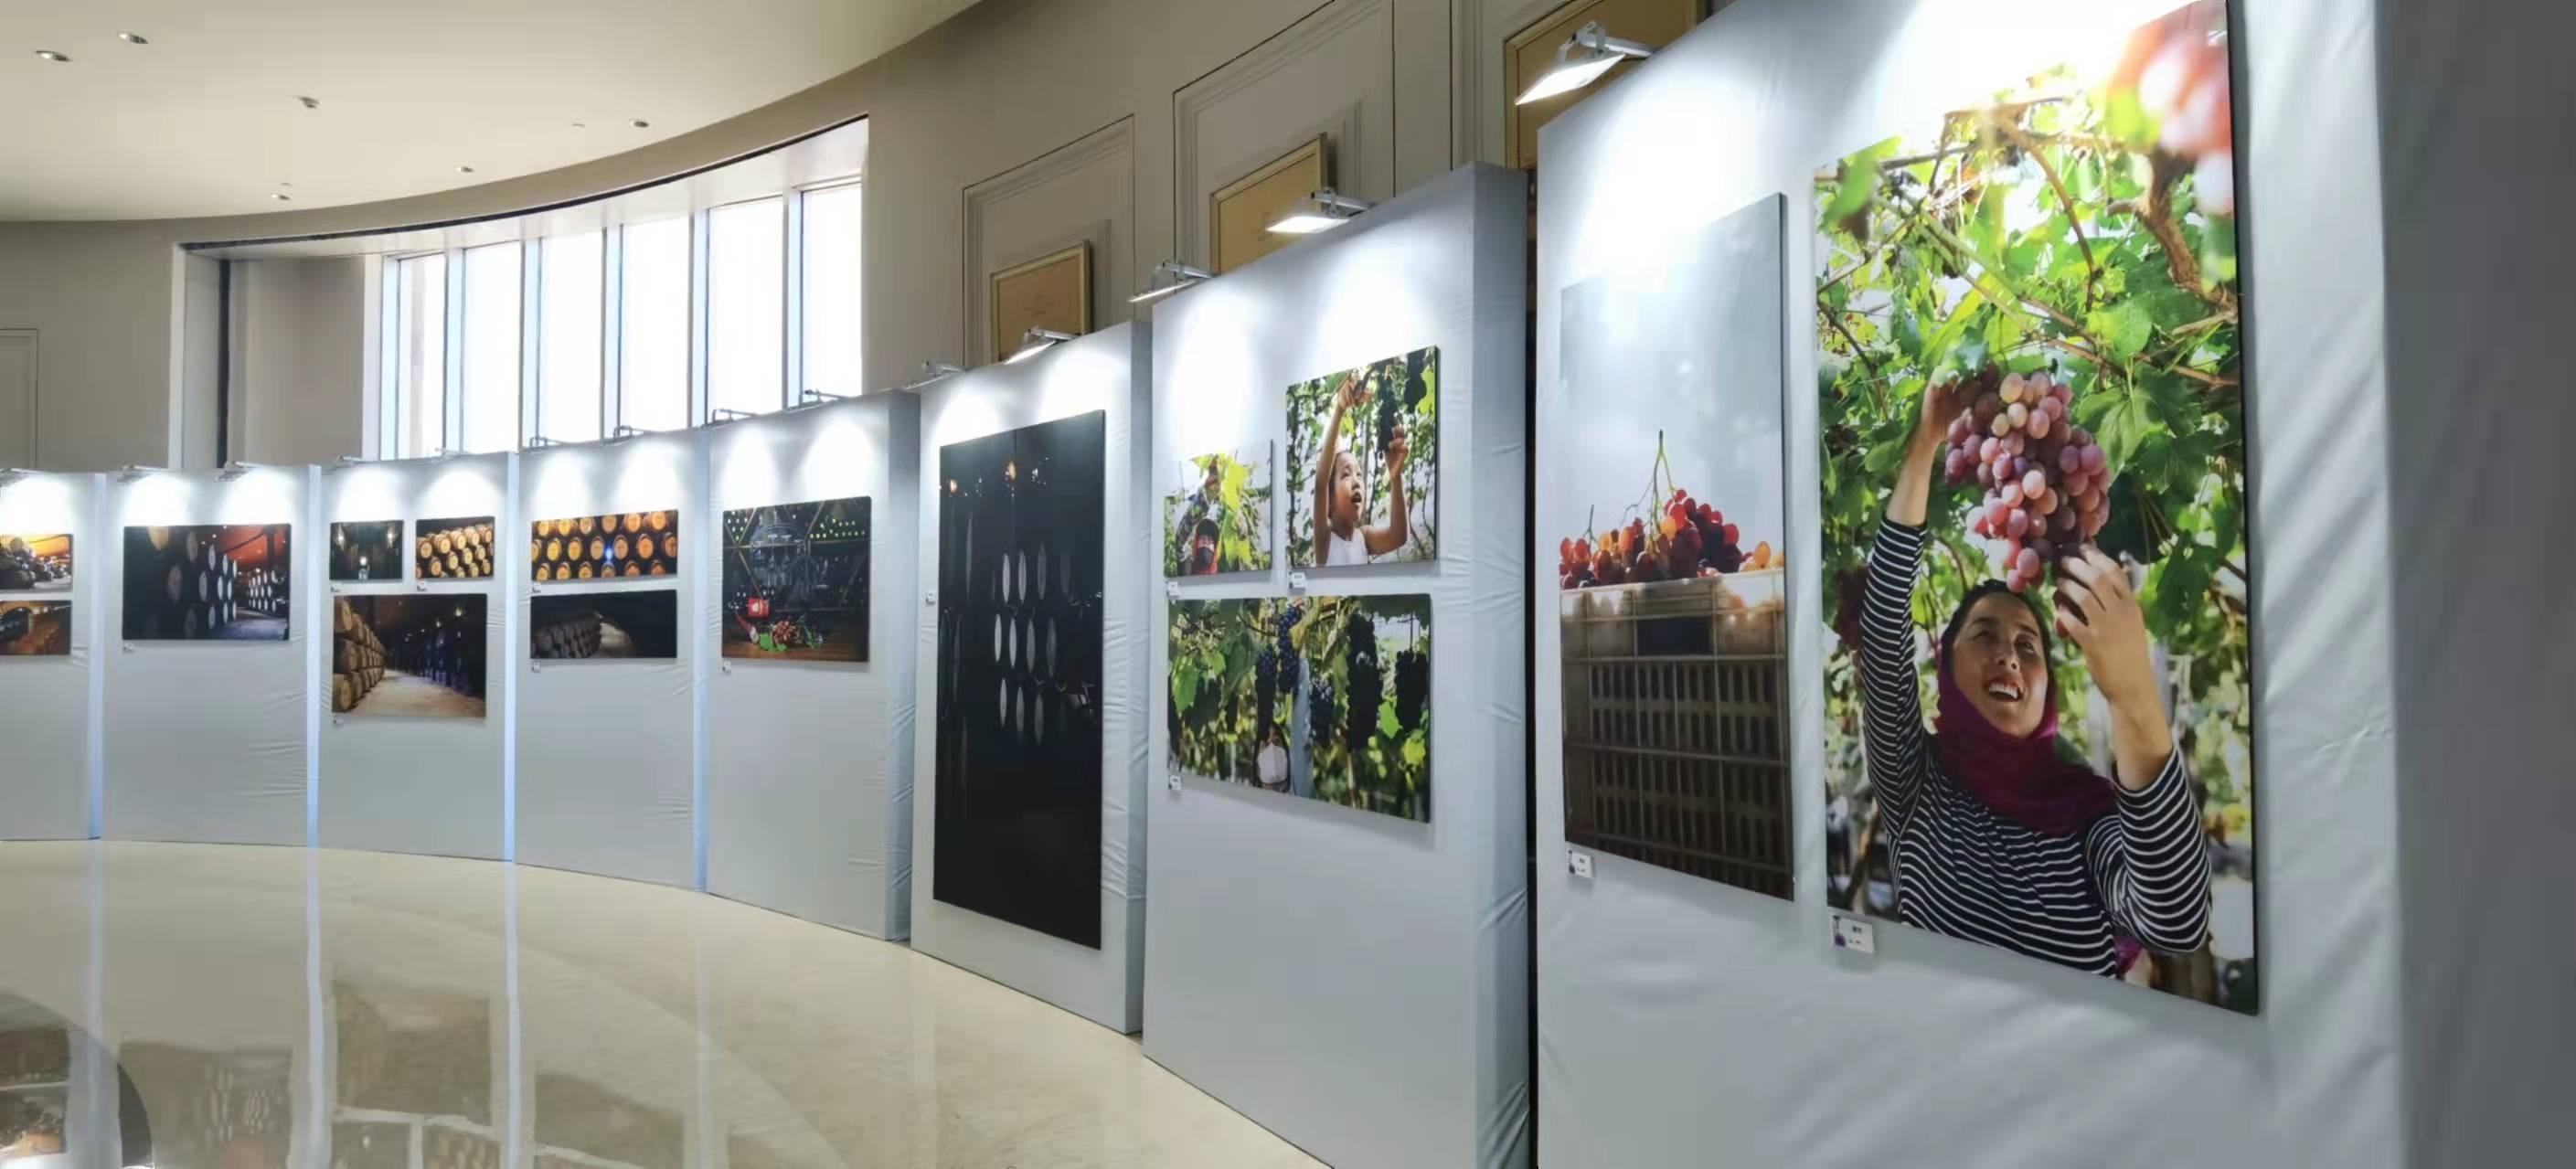 昌黎首次举办葡萄摄影专题展 用照片表达昌黎葡萄产业的特色与风采